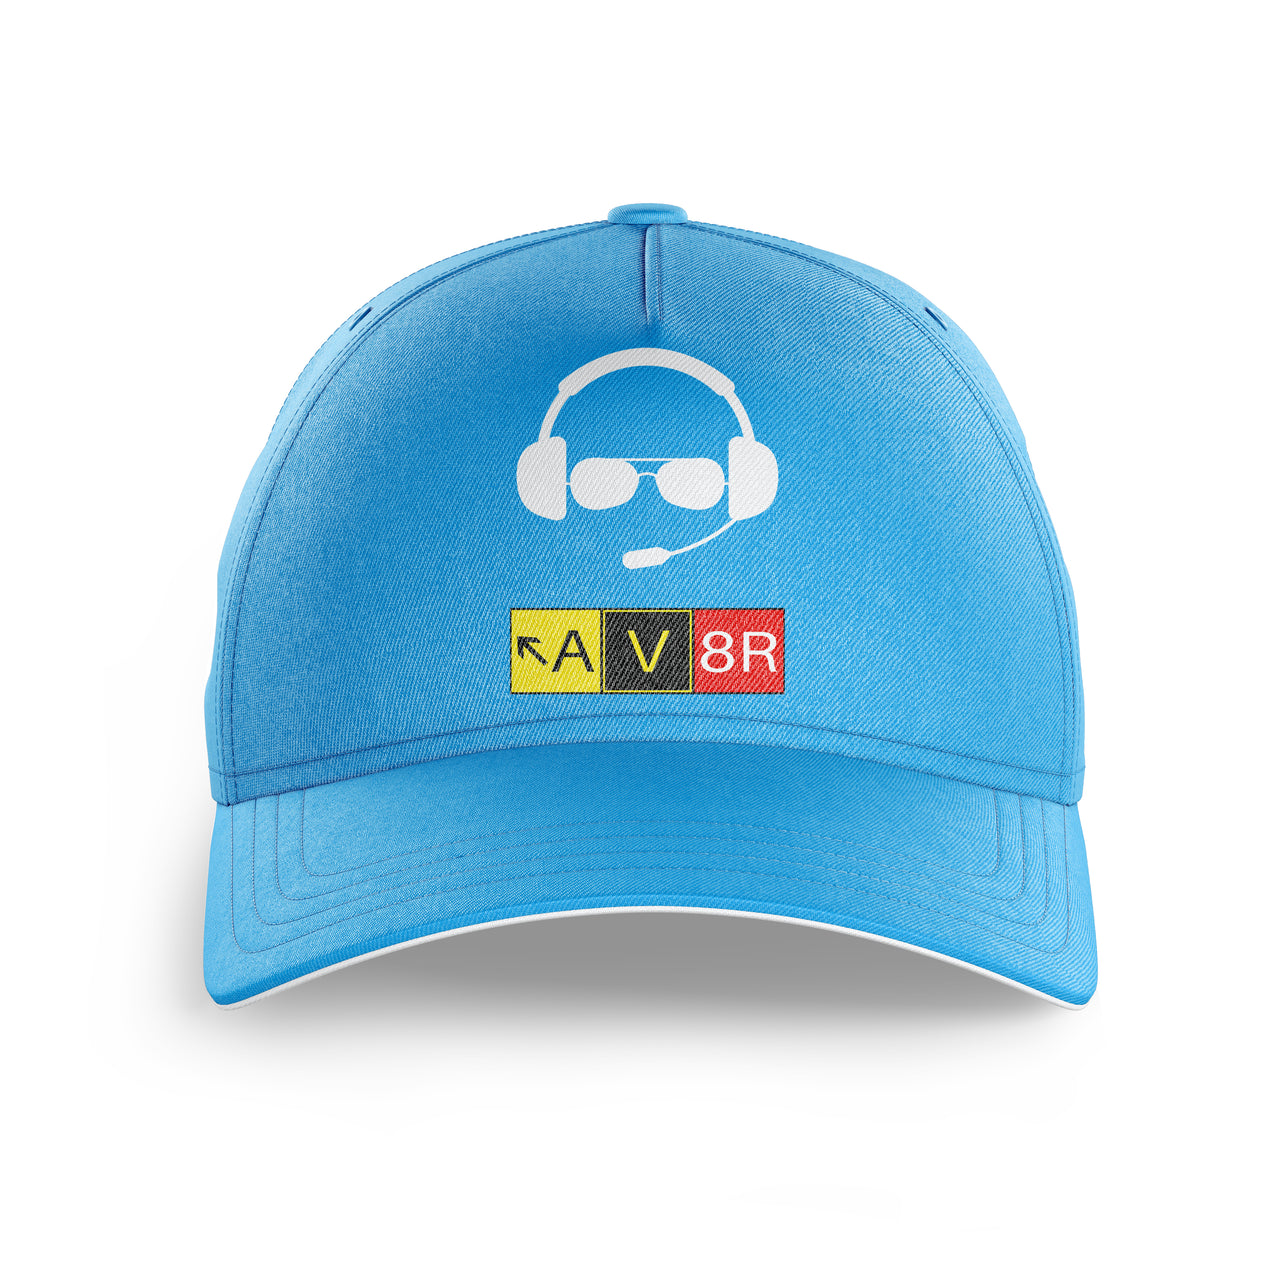 AV8R 2 Printed Hats